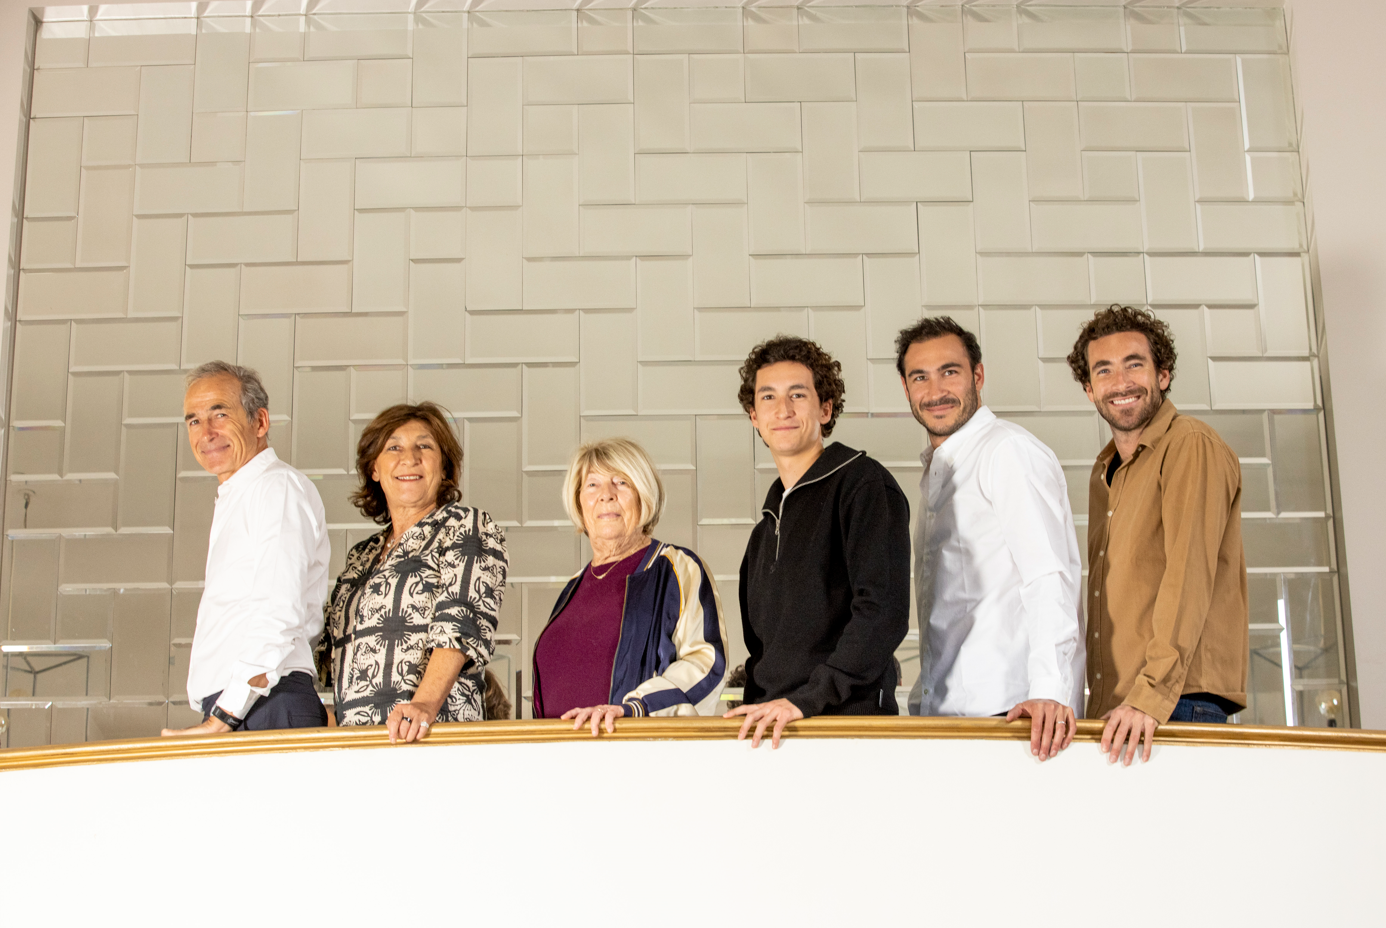 La famille Kretz au balcon de leur hôtel particulier à Boulogne-Billancourt, de gauche à droite&nbsp;: Olivier, Sandrine, Majo, Raphaël, Valentin et Martin.